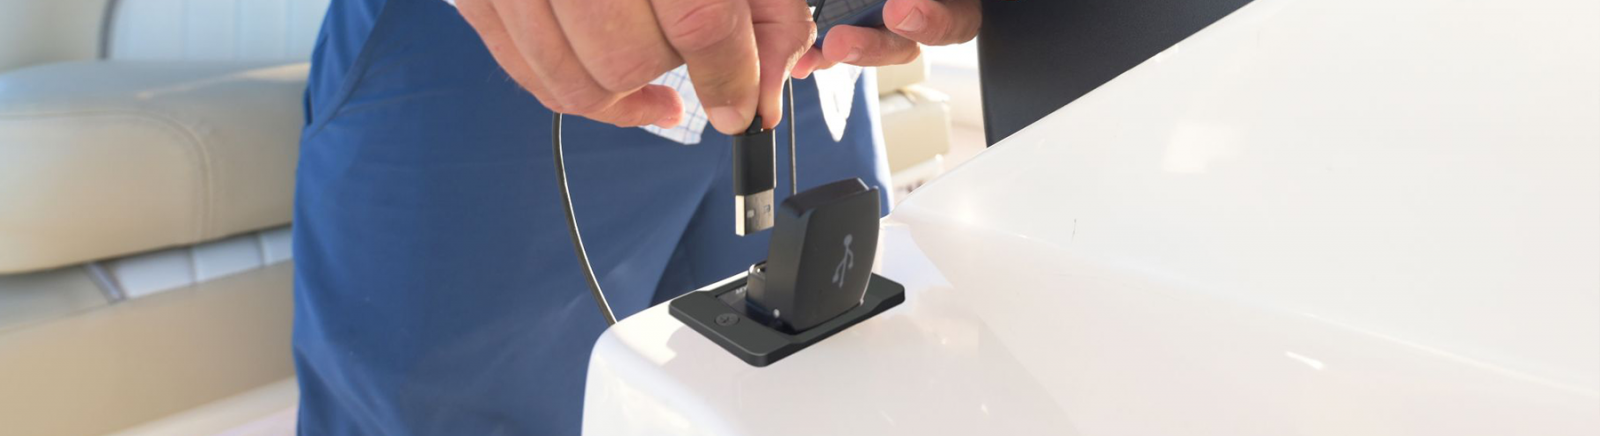 Câble USB chargeur étanche IPhone Apple - 60 cm - SCANSTRUT